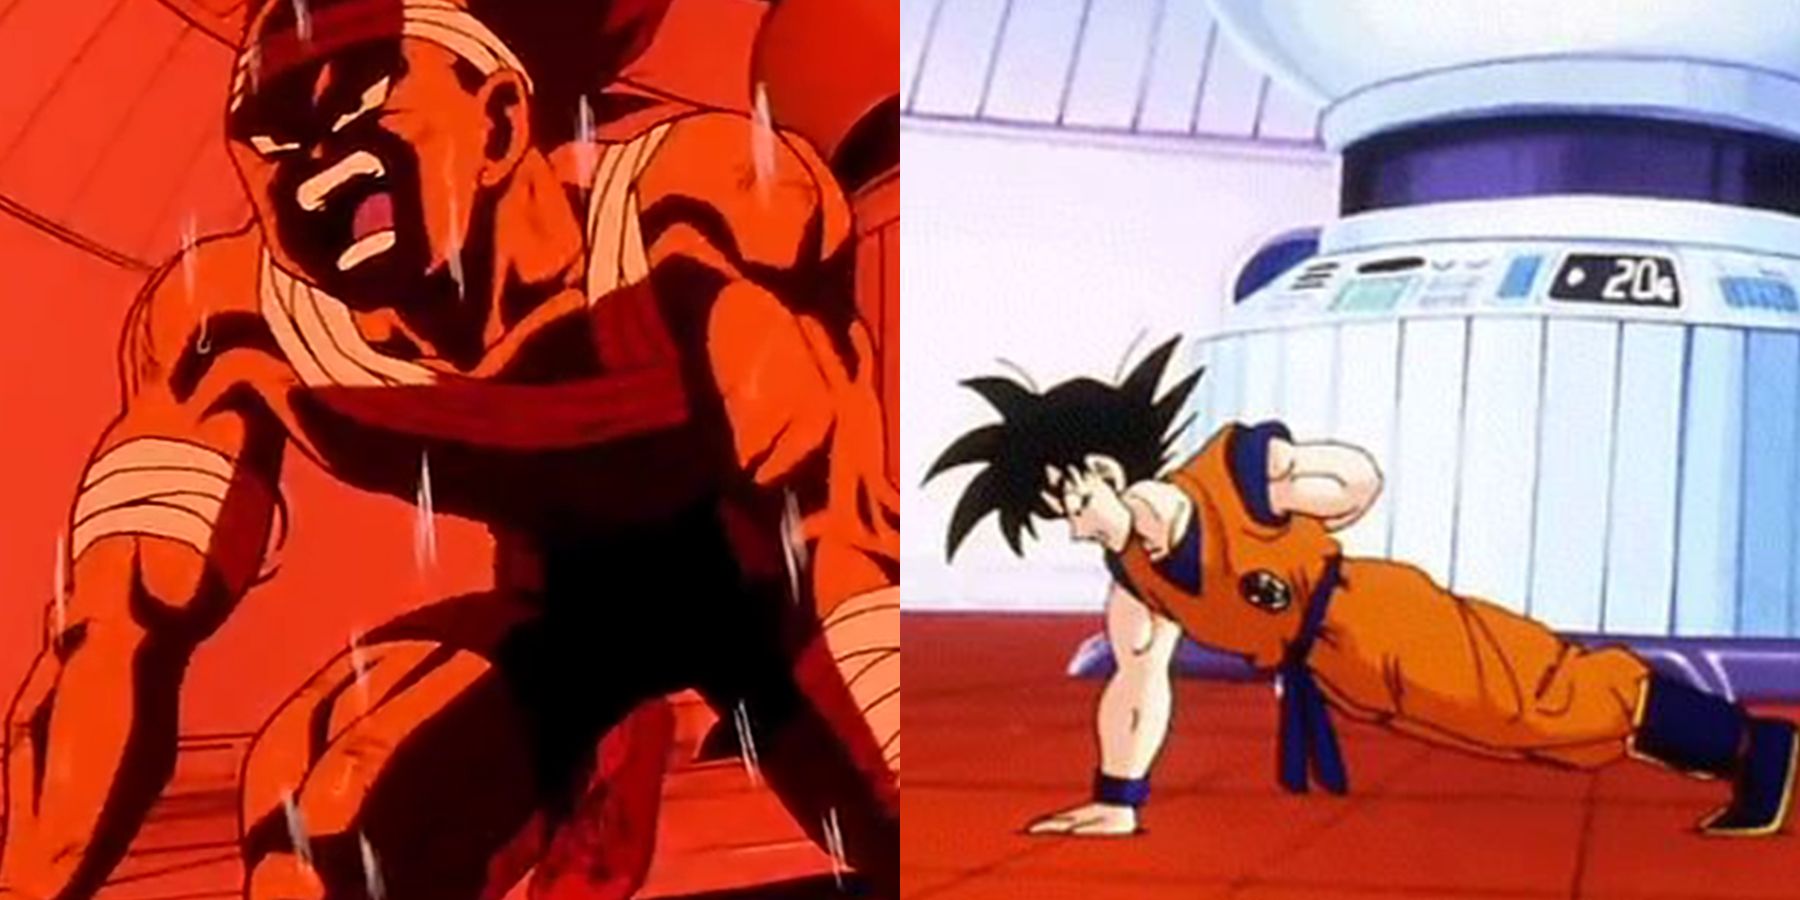 Goku and Vegeta Training Separately